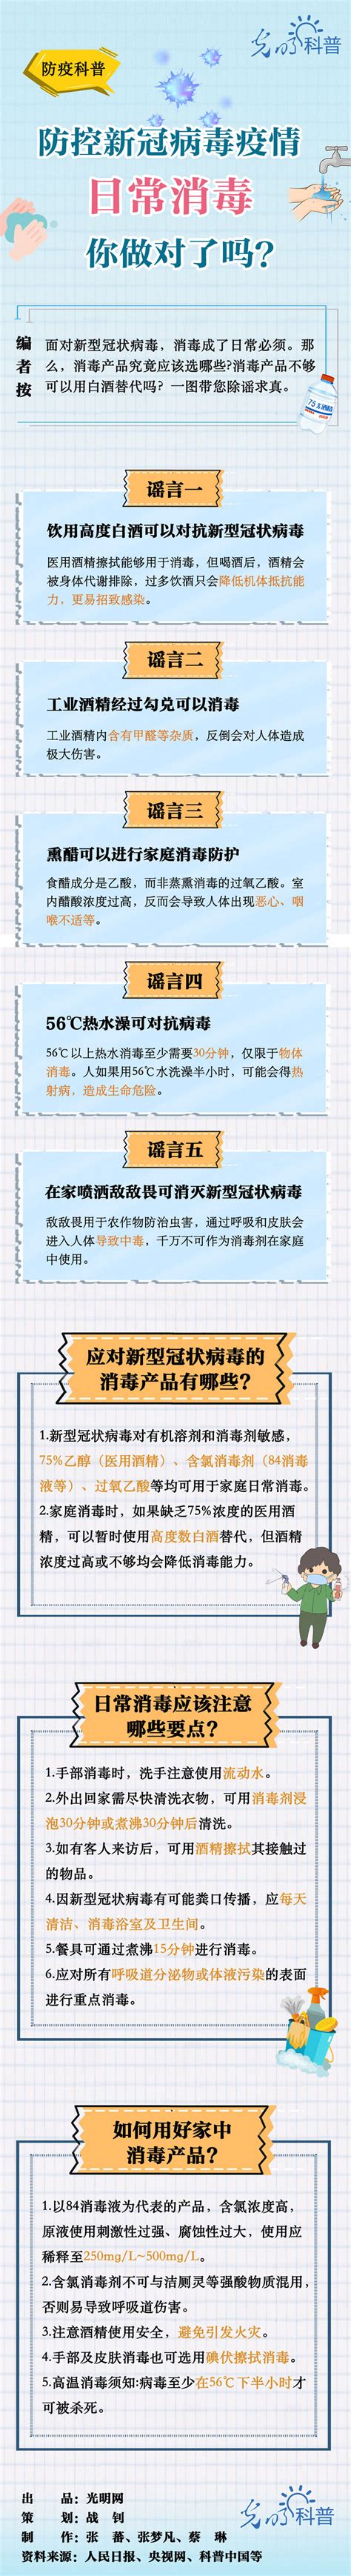 文艺评论丨好戏是视听语言高密度的设计与巧思 行业观察 湖南省网络视听协会